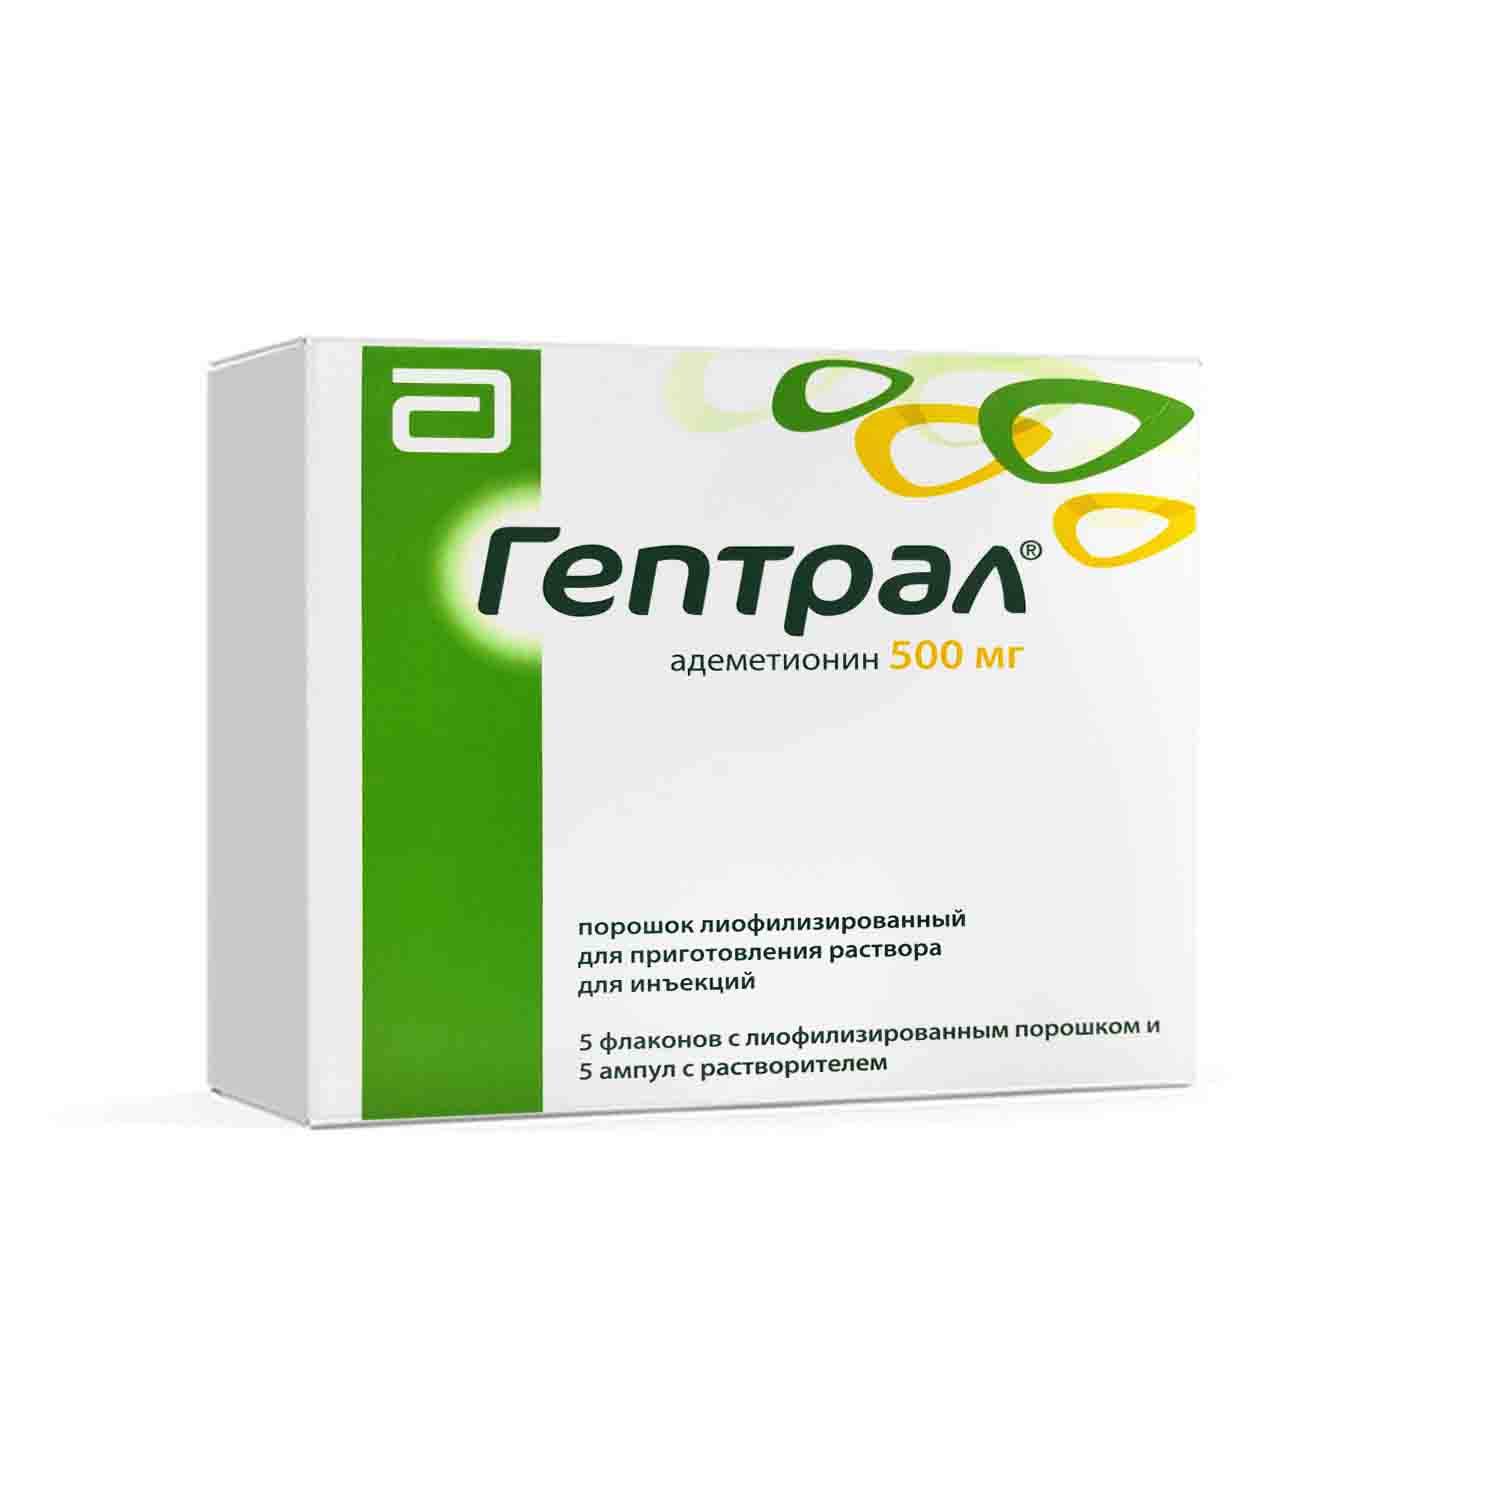 Гептрал (таблетки, 20 шт, 400 мг) - цена, купить онлайн в санкт-петербурге, описание, отзывы, заказать с доставкой в аптеку - все аптеки